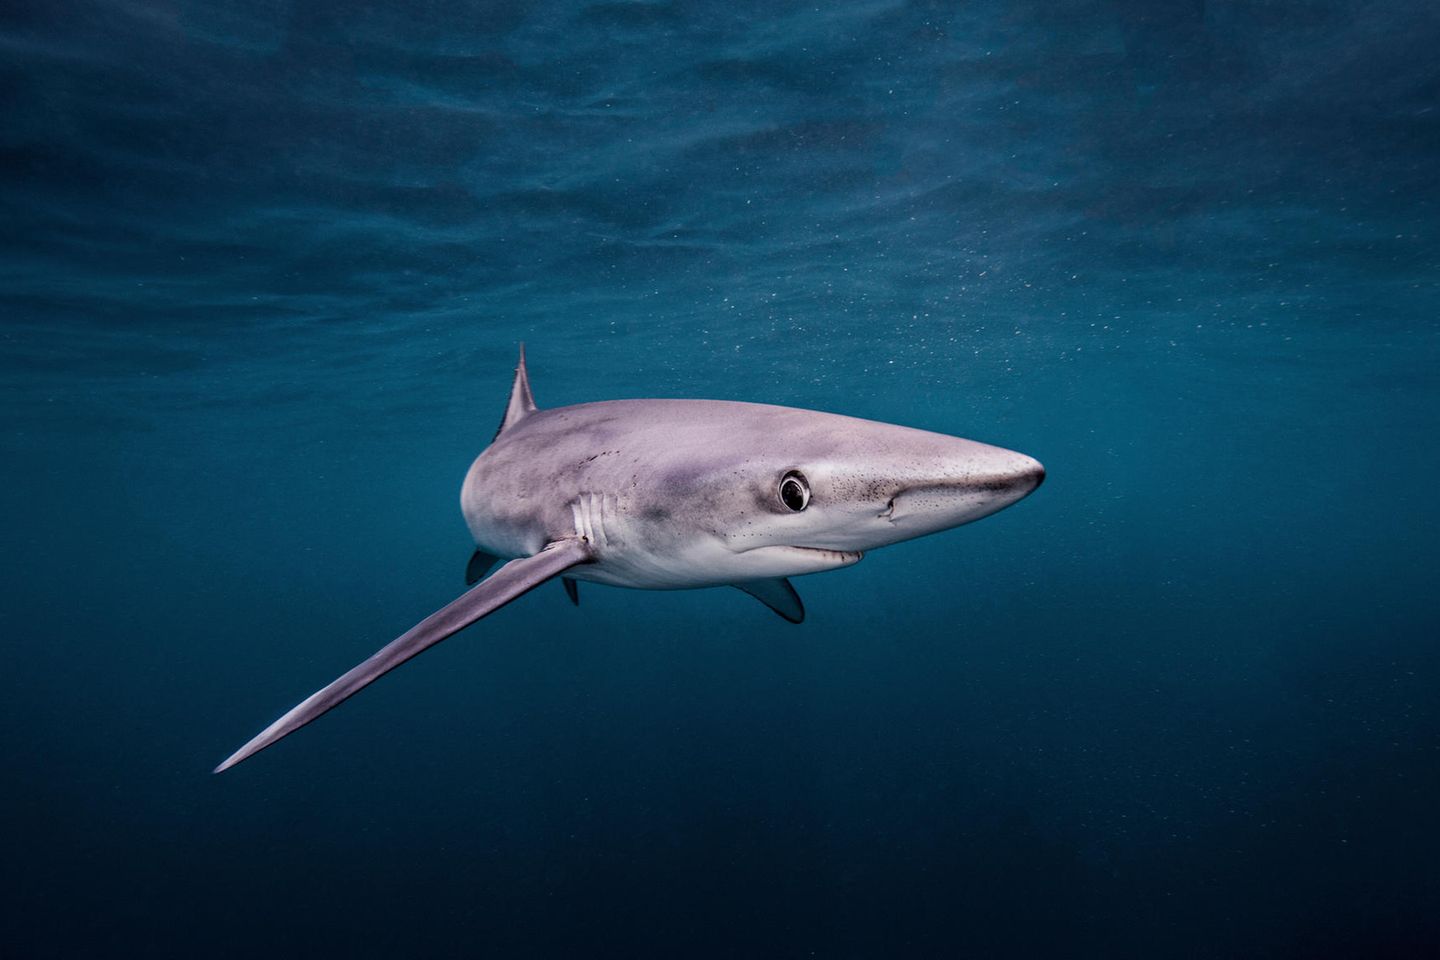 Artenschutz: Haiflossen aus der EU landen in Asien – kann ein Handelsverbot die Tiere retten?